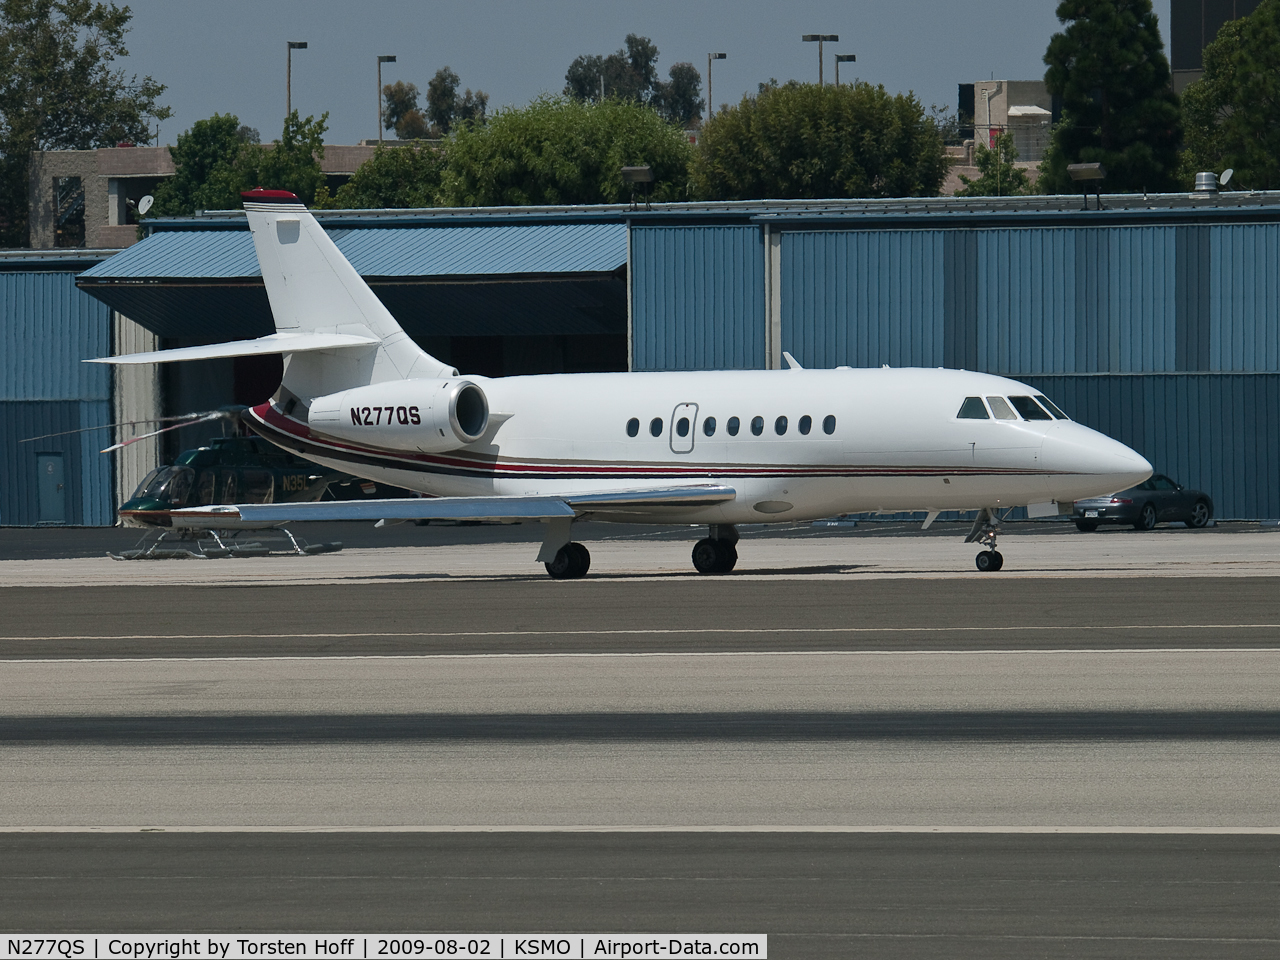 N277QS, 2002 Dassault Falcon 2000 C/N 177, N277QS taxiing